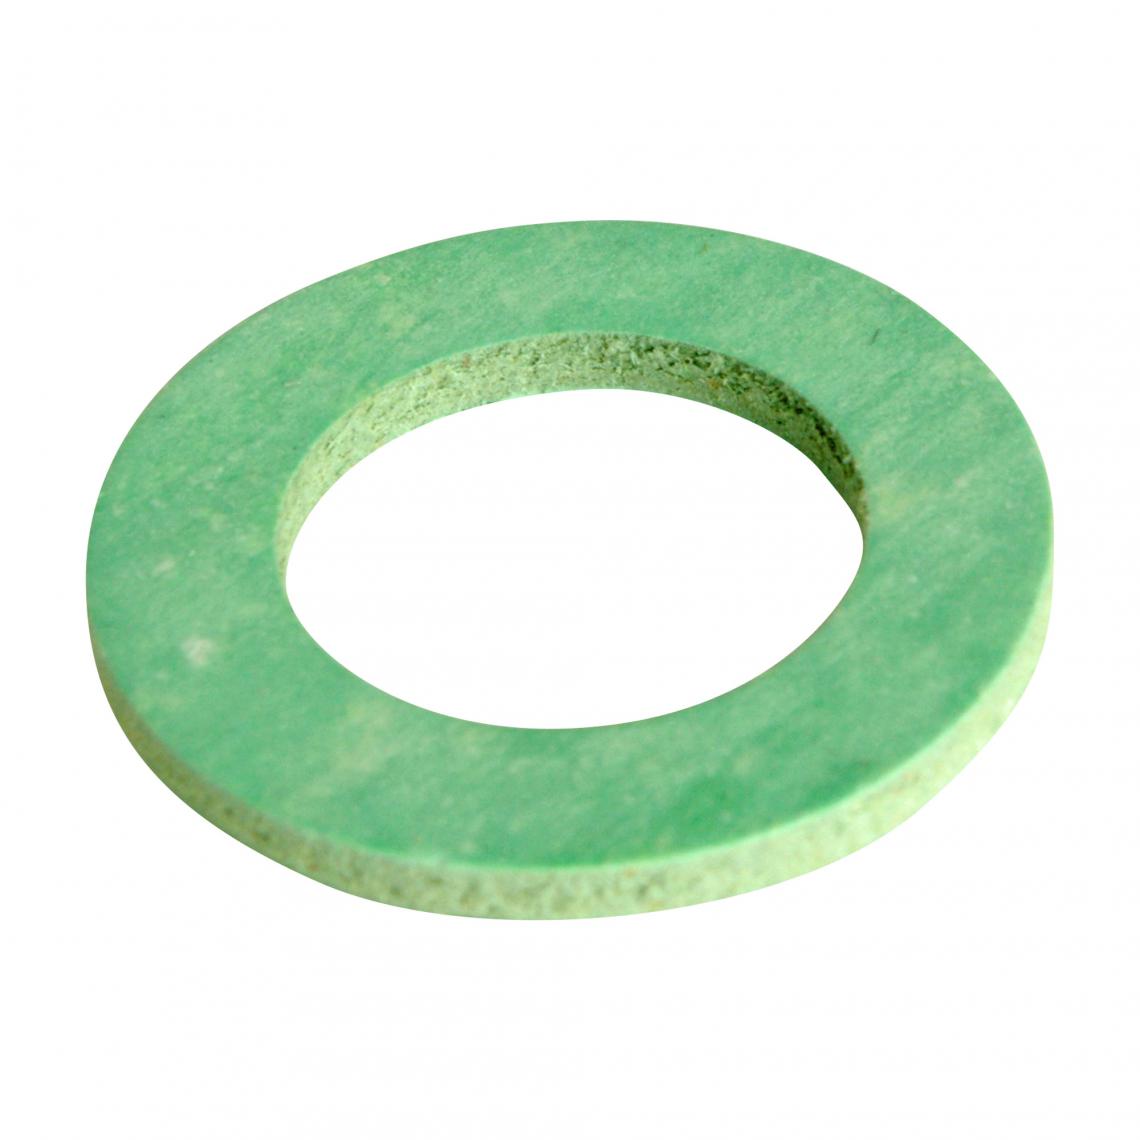 Somatherm For You - Lot de 5 joints fibre vert en 26/34 - Mastic, silicone, joint